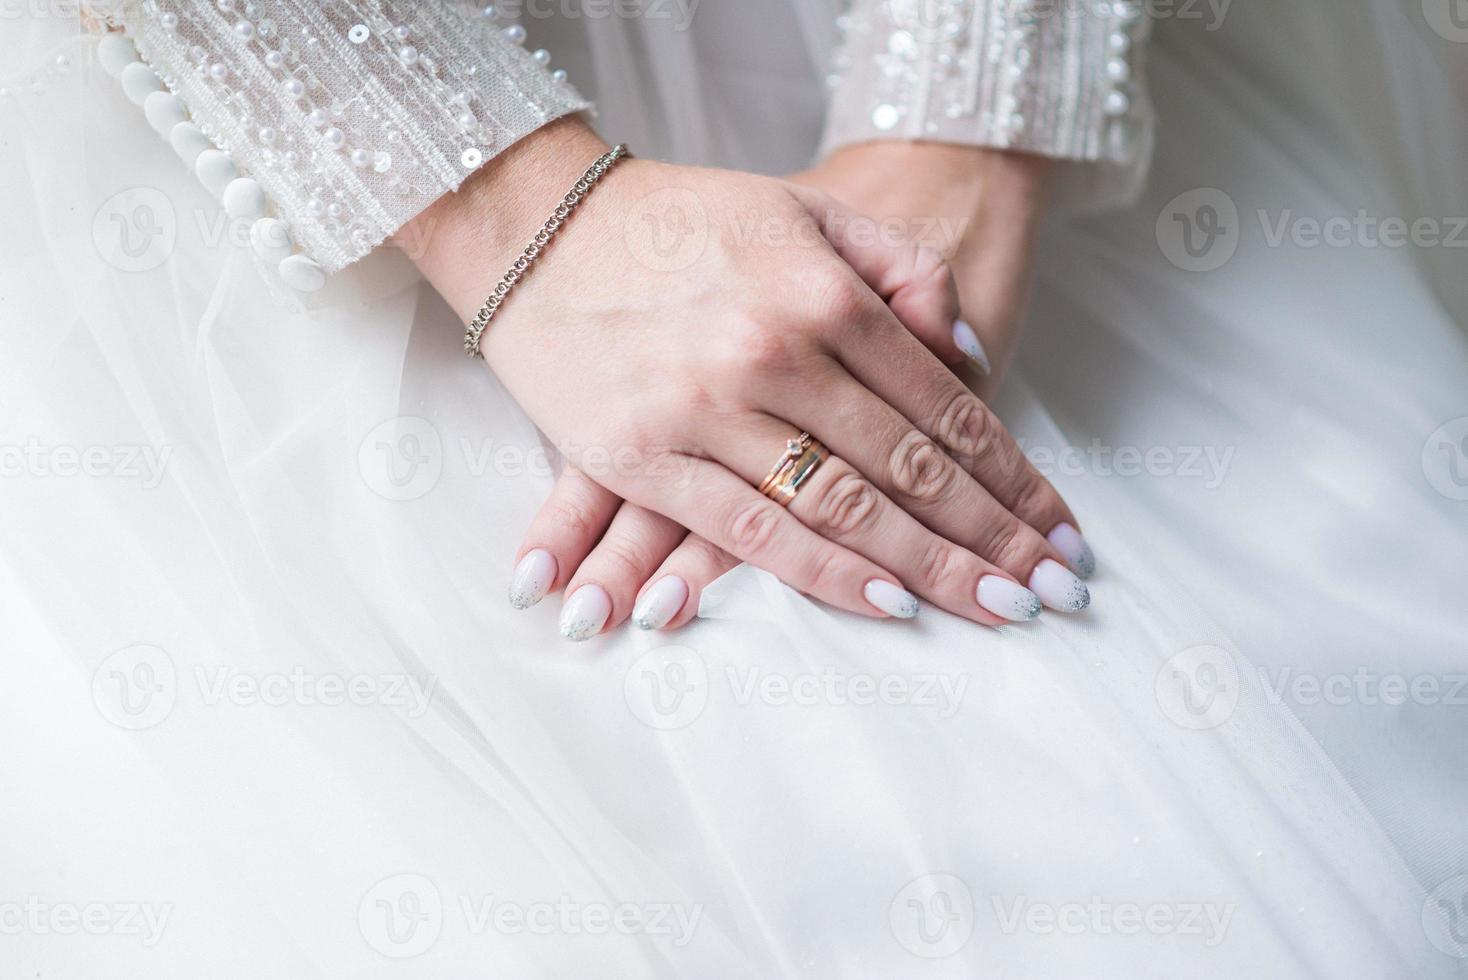 hombre y mujer con anillo de bodas.pareja casada joven tomados de la mano, foto